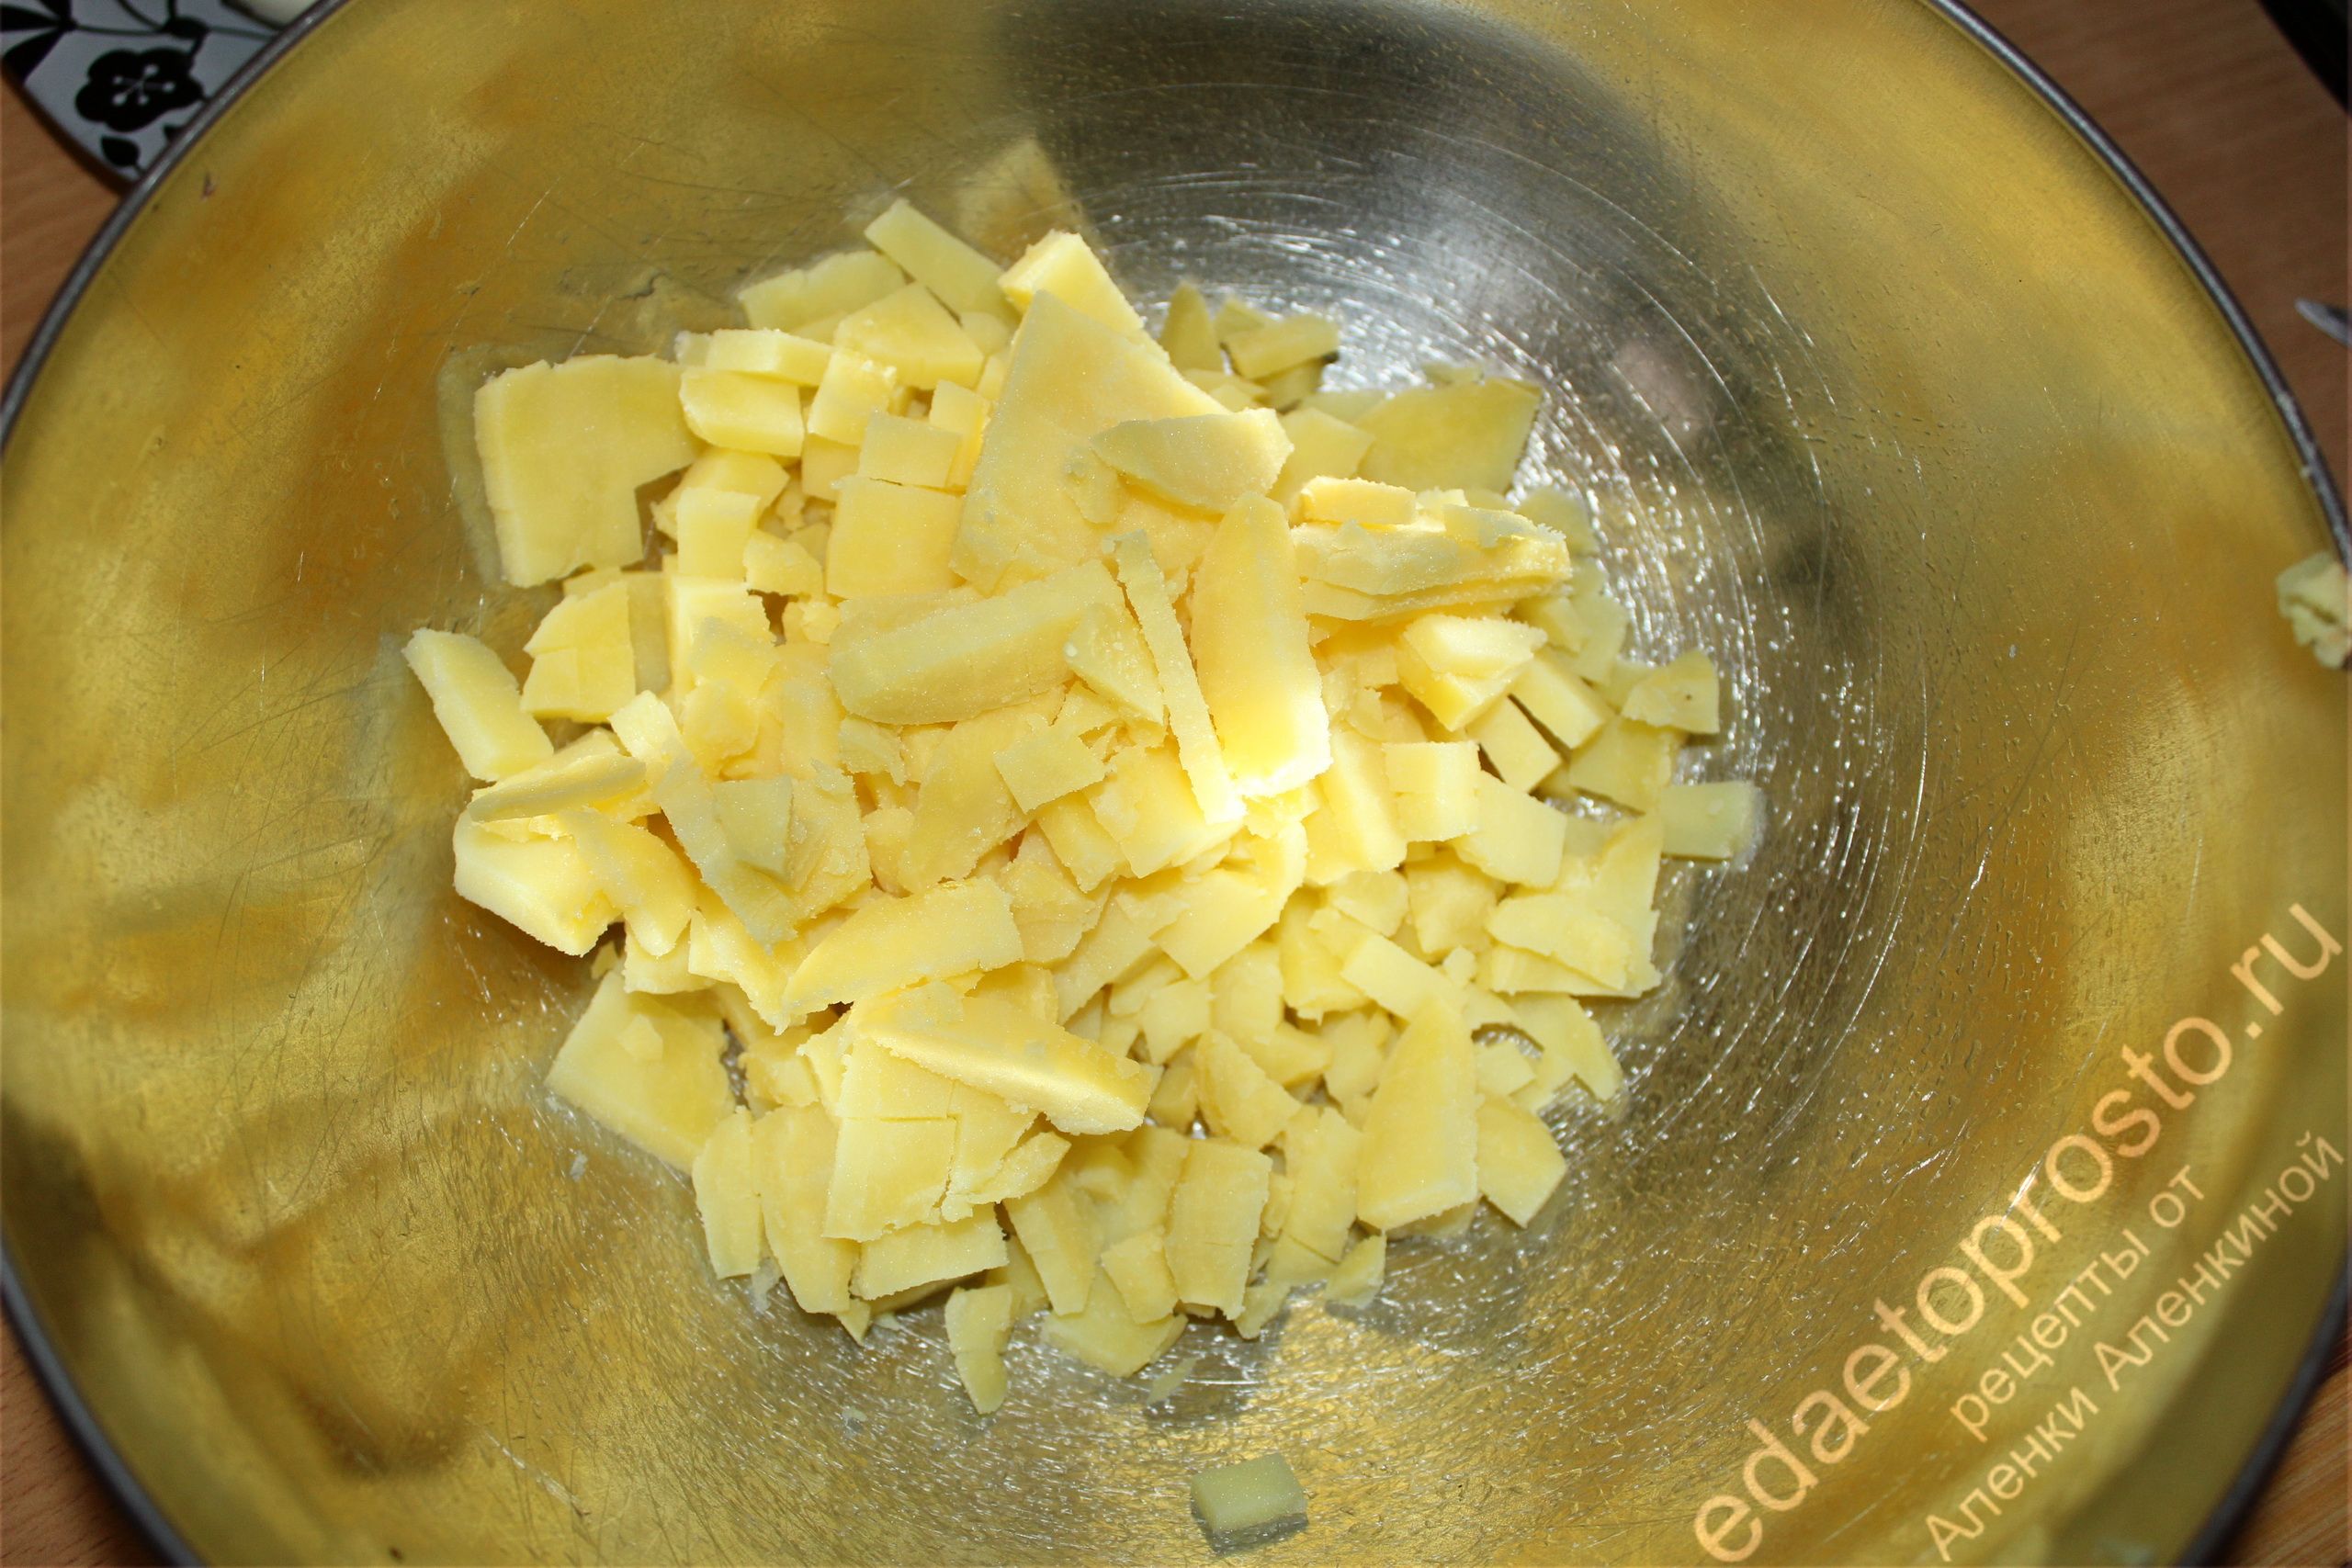 фото простого блюда из картофеля - вареный картофель в миске